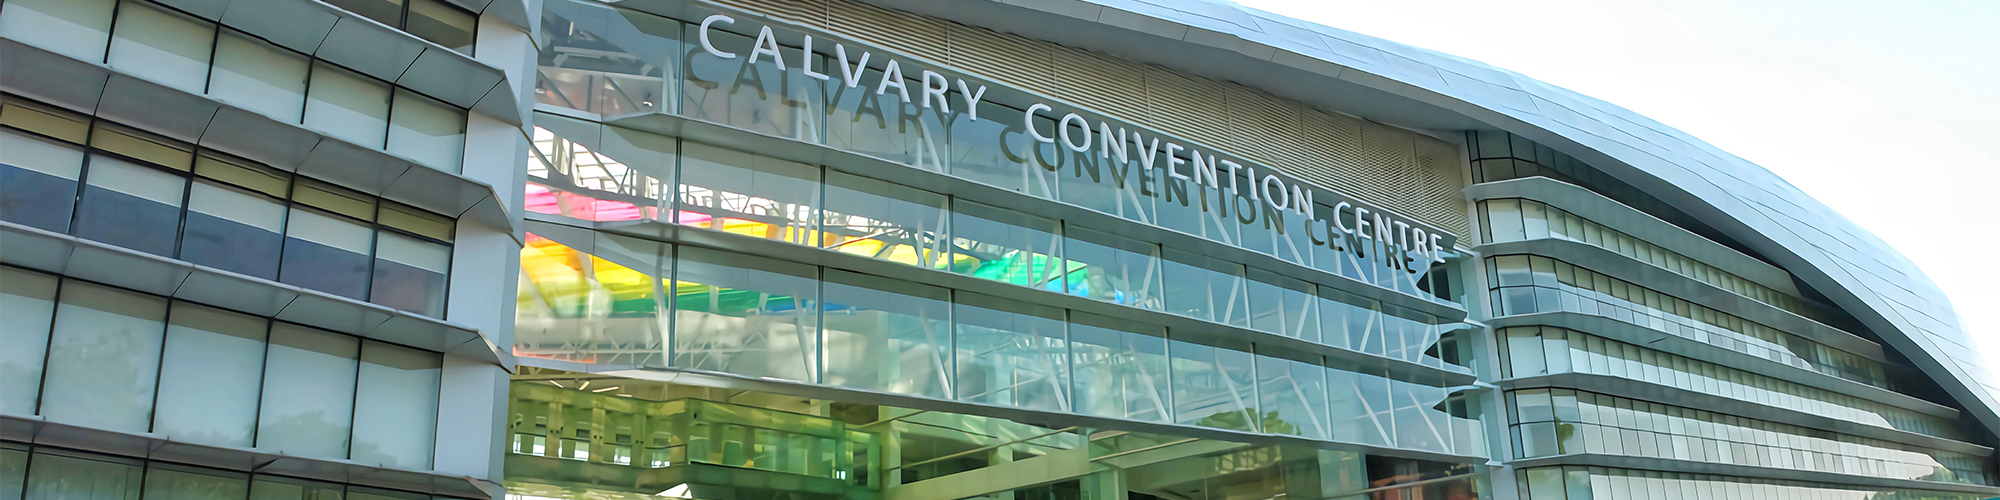 Calvary Convention Centre 1a